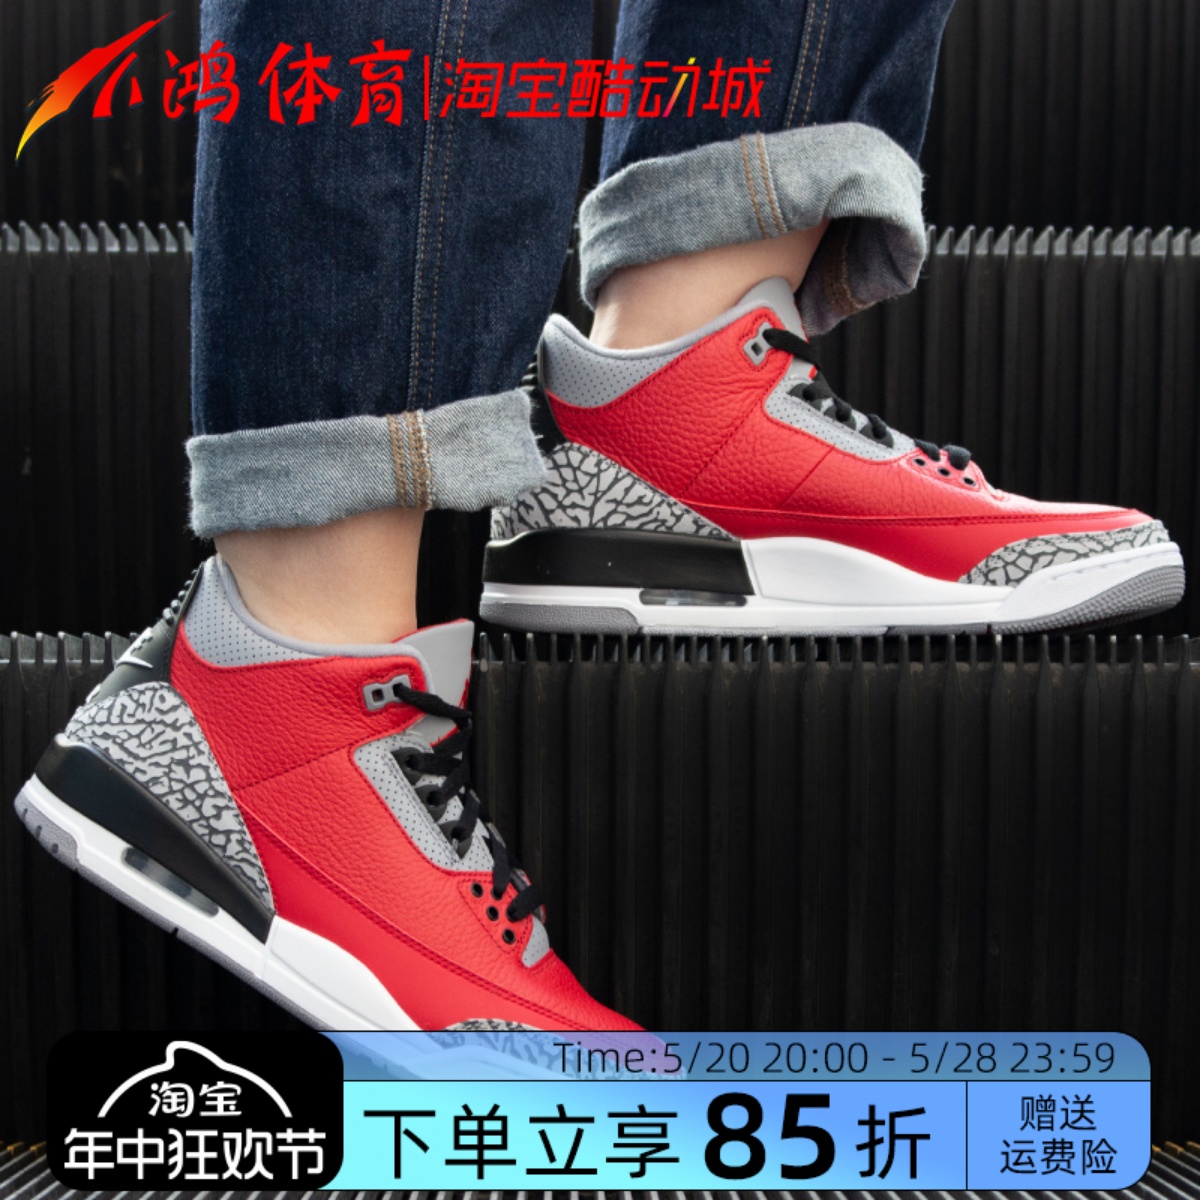 小鸿体育Air Jordan 3 AJ3红水泥全明星大红复古篮球鞋CK5692-600